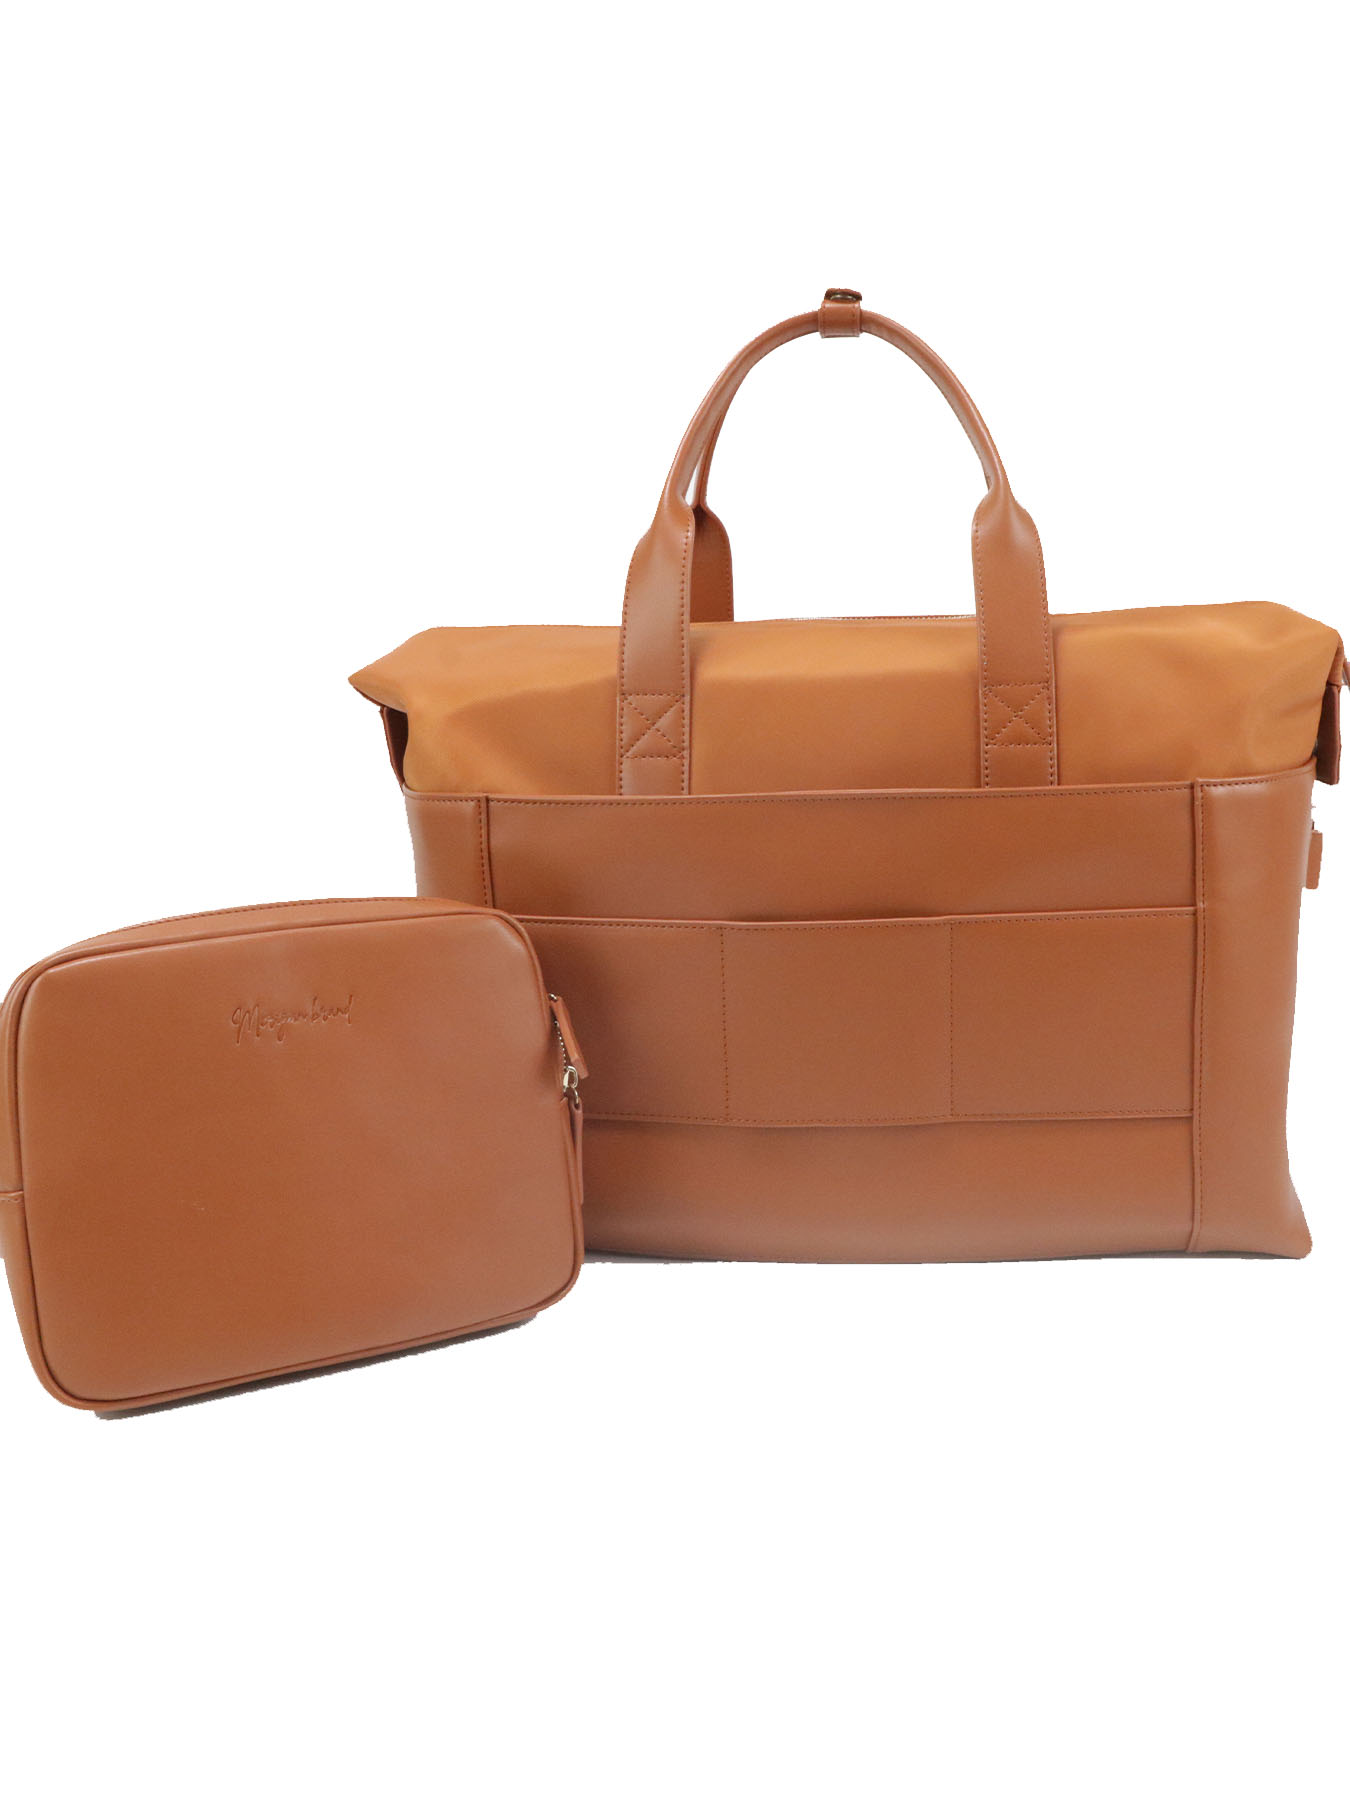 simple fashion women's handbags